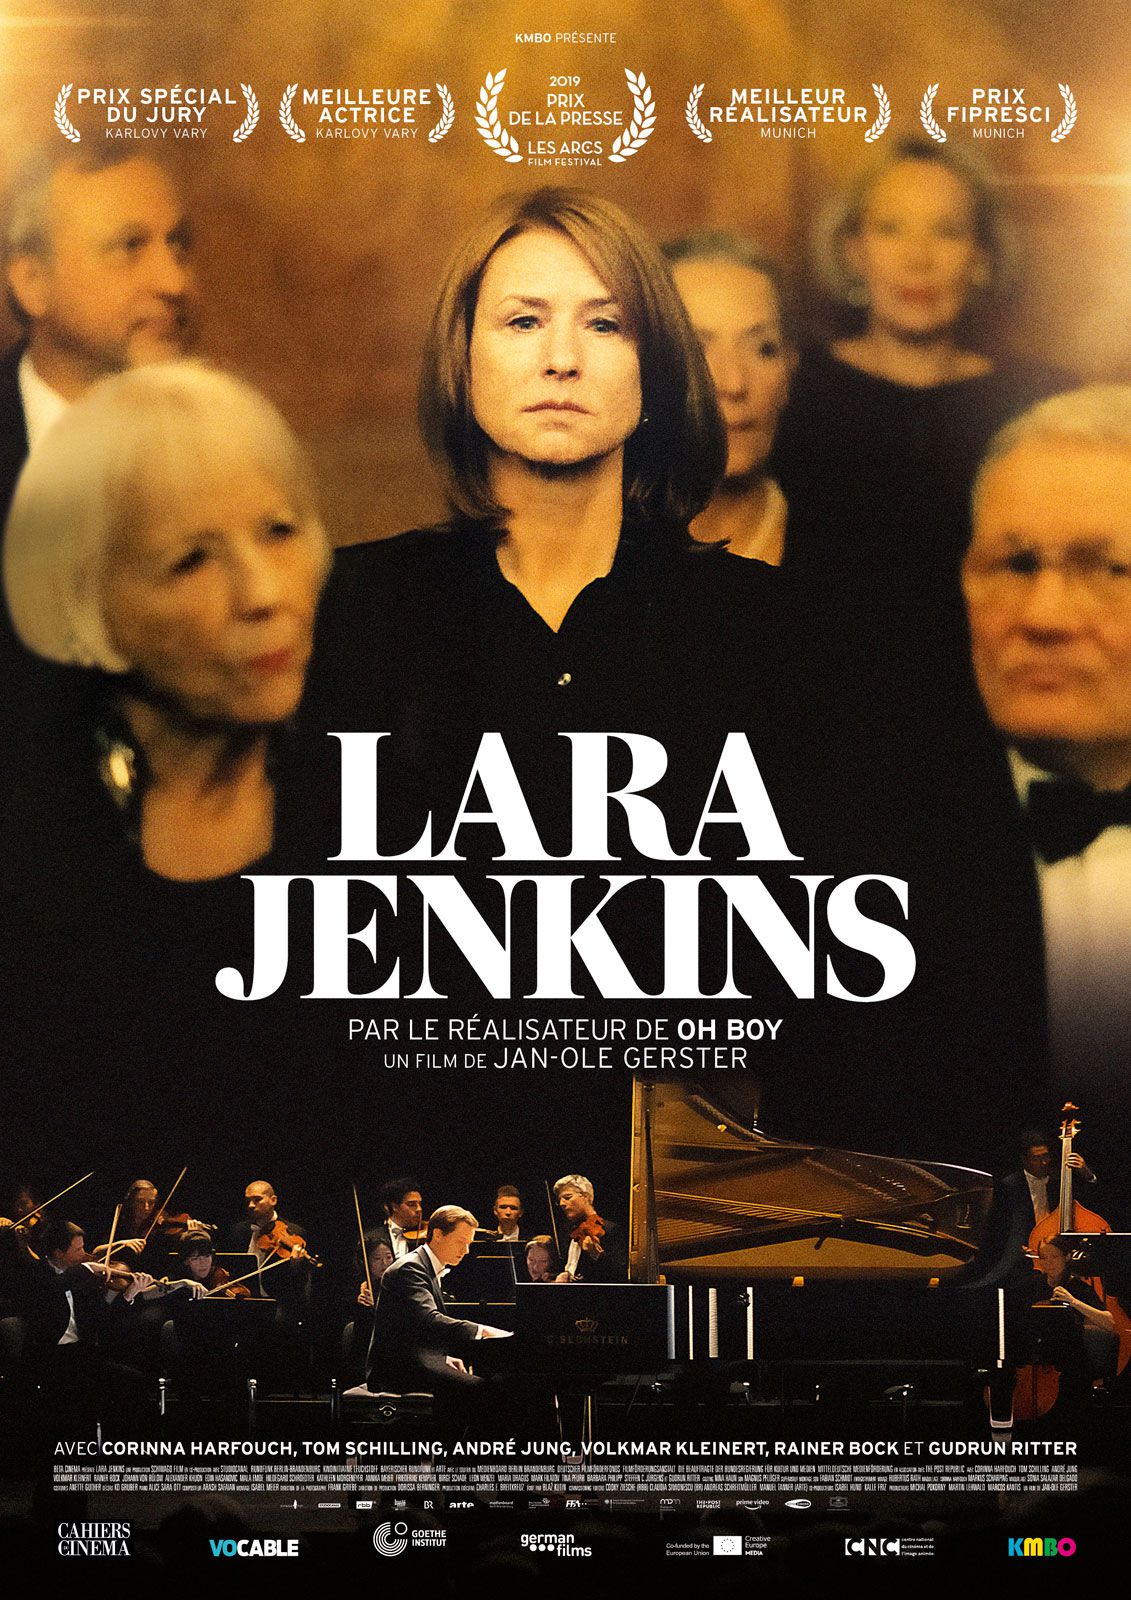 Lara Jenkins - Film (2020) streaming VF gratuit complet